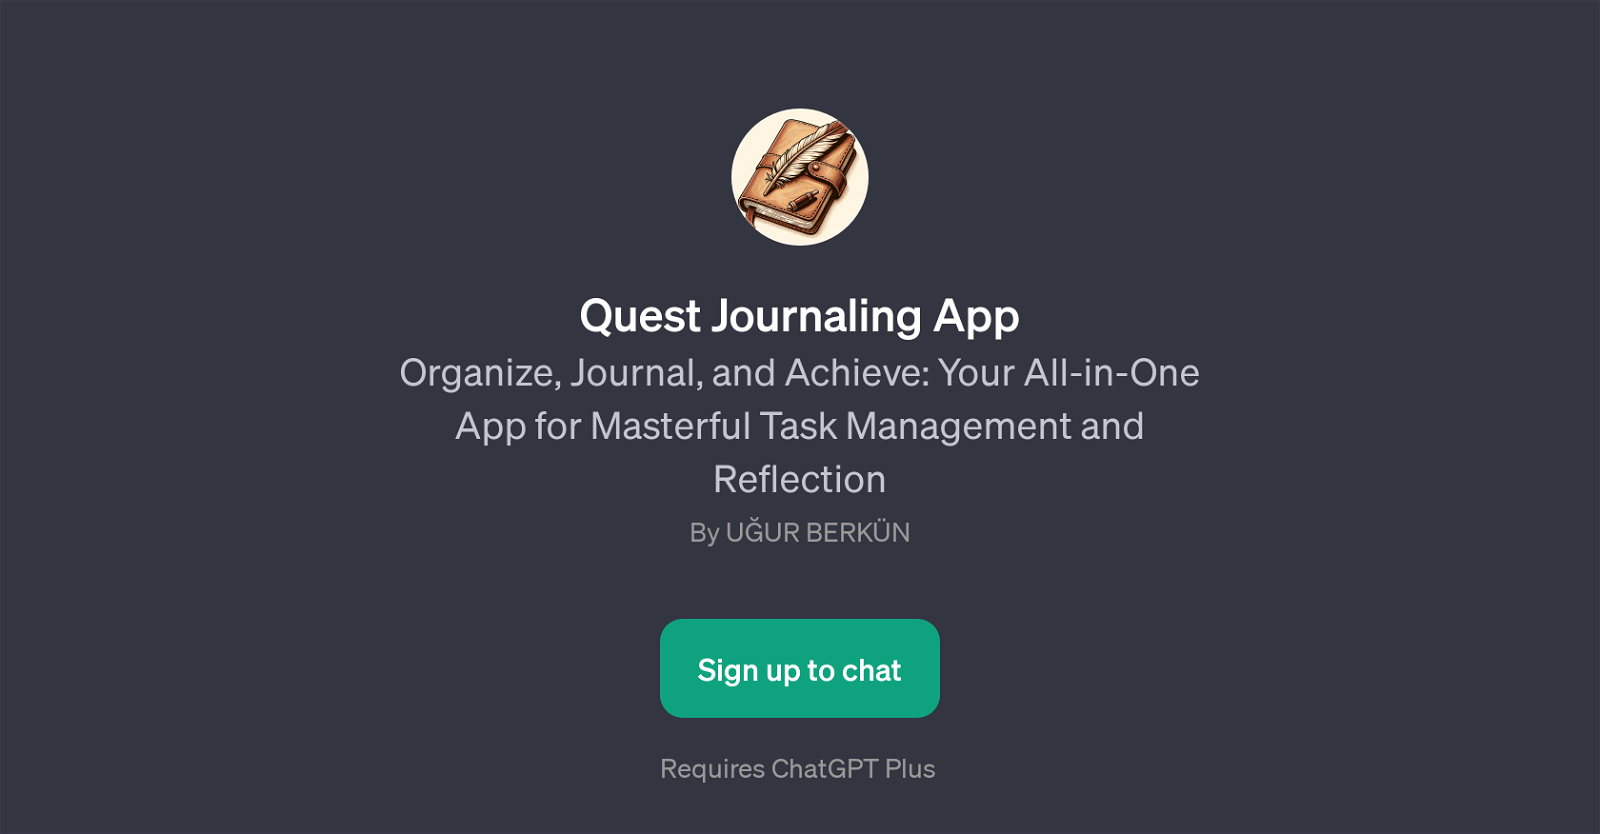 Quest Journaling App website